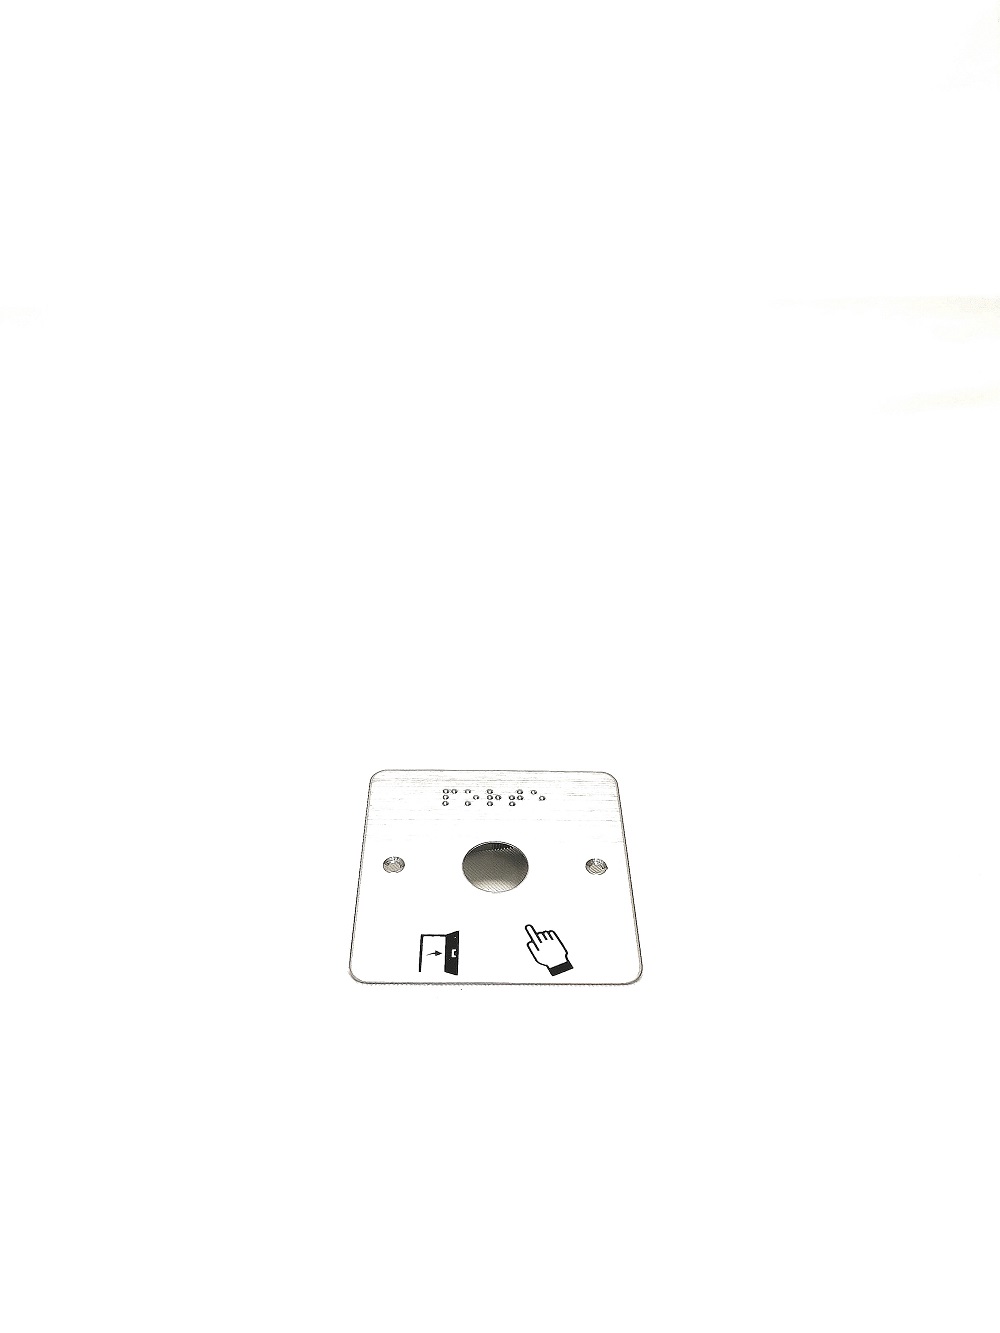 Plaque en acier inoxydable IZYX SSP201 pour bouton poussoir 19mm. Modèle large avec pictogrammes et marquage braille. Compatible boîtes de cloisons.